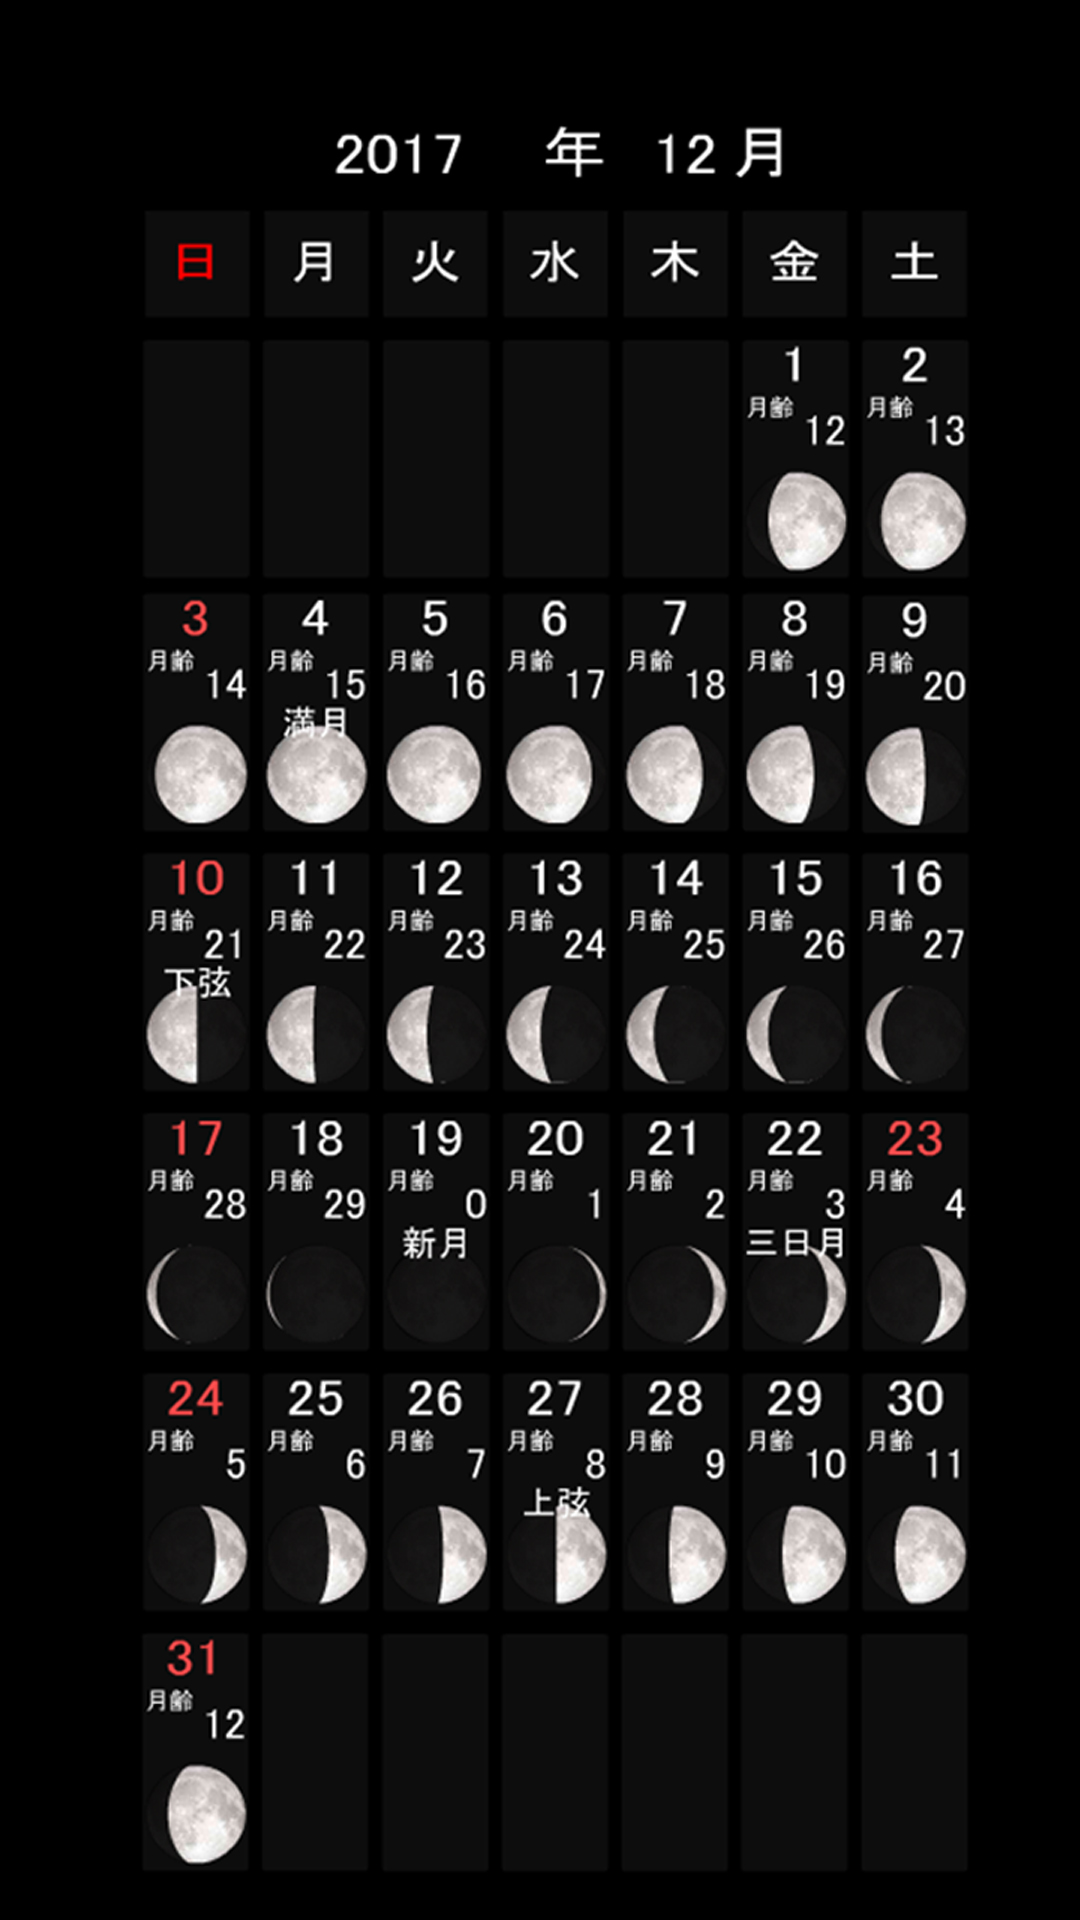 月齢カレンダー 17年12月 Pc スマートフォンの壁紙 スマートマイズ